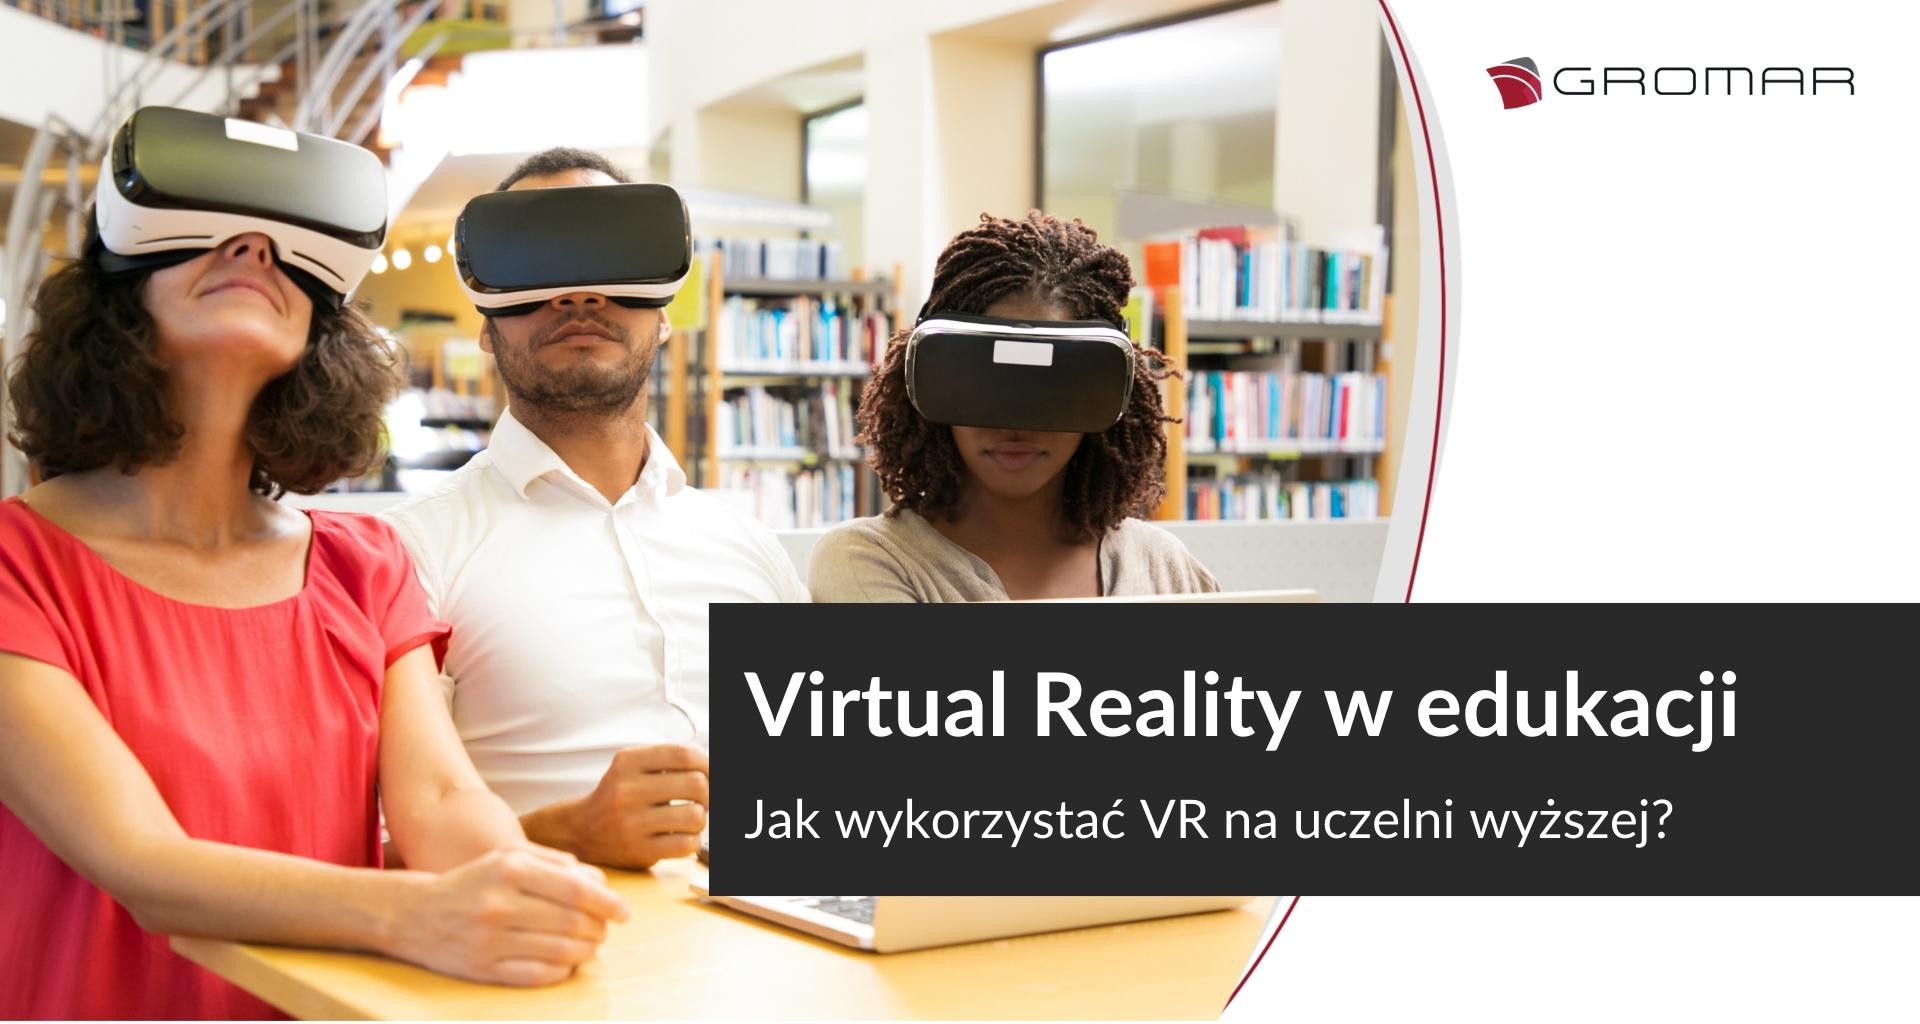 VR w edukacji. Jak wykorzystać Virtual Reality na uczelni wyższej?